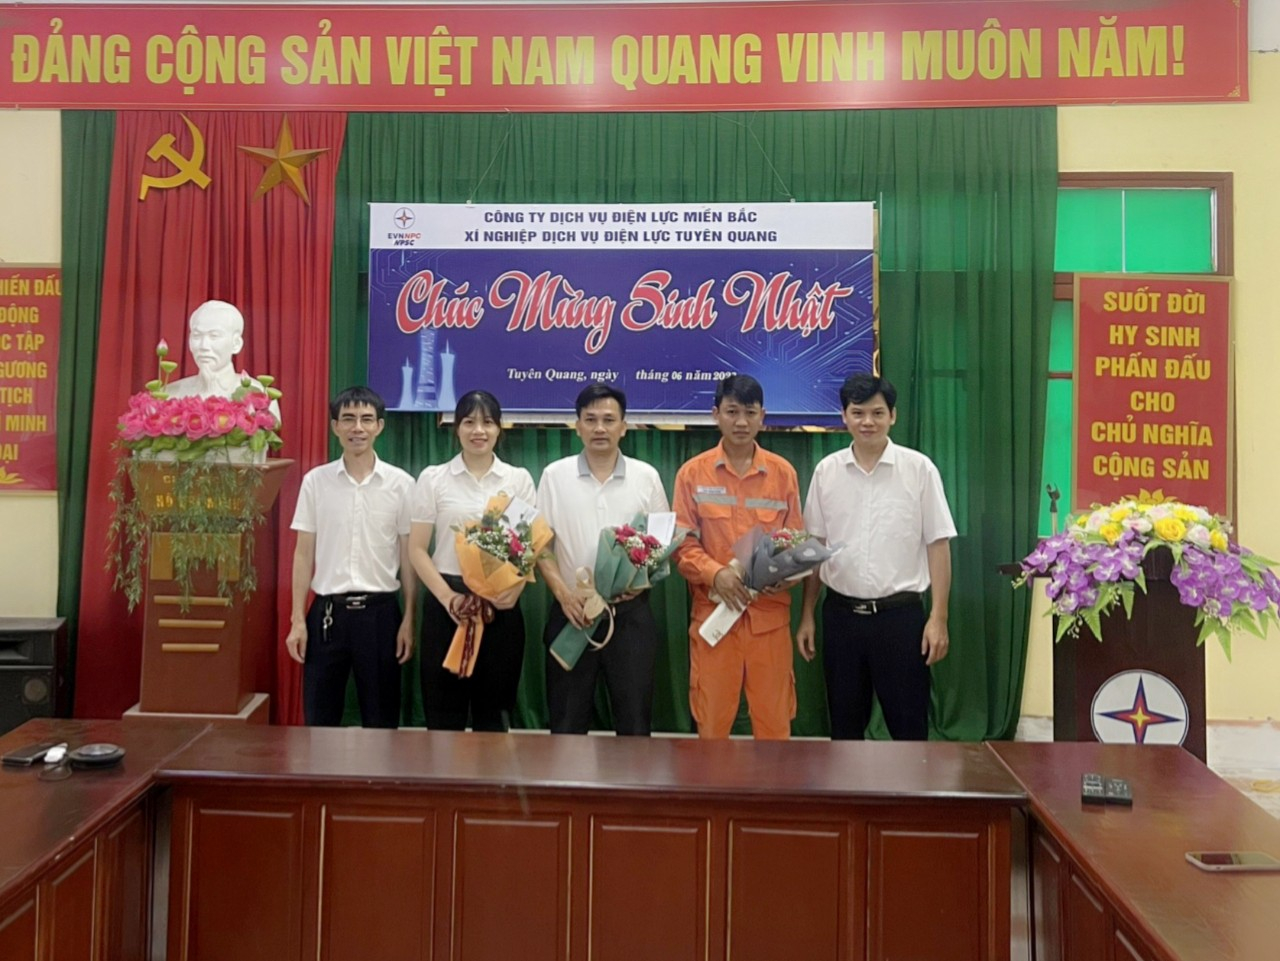 Xí nghiệp Dịch vụ Điện lực Tuyên Quang tổ chức tặng hoa, tặng quà cho CBCNV có ngày Sinh nhật trong tháng